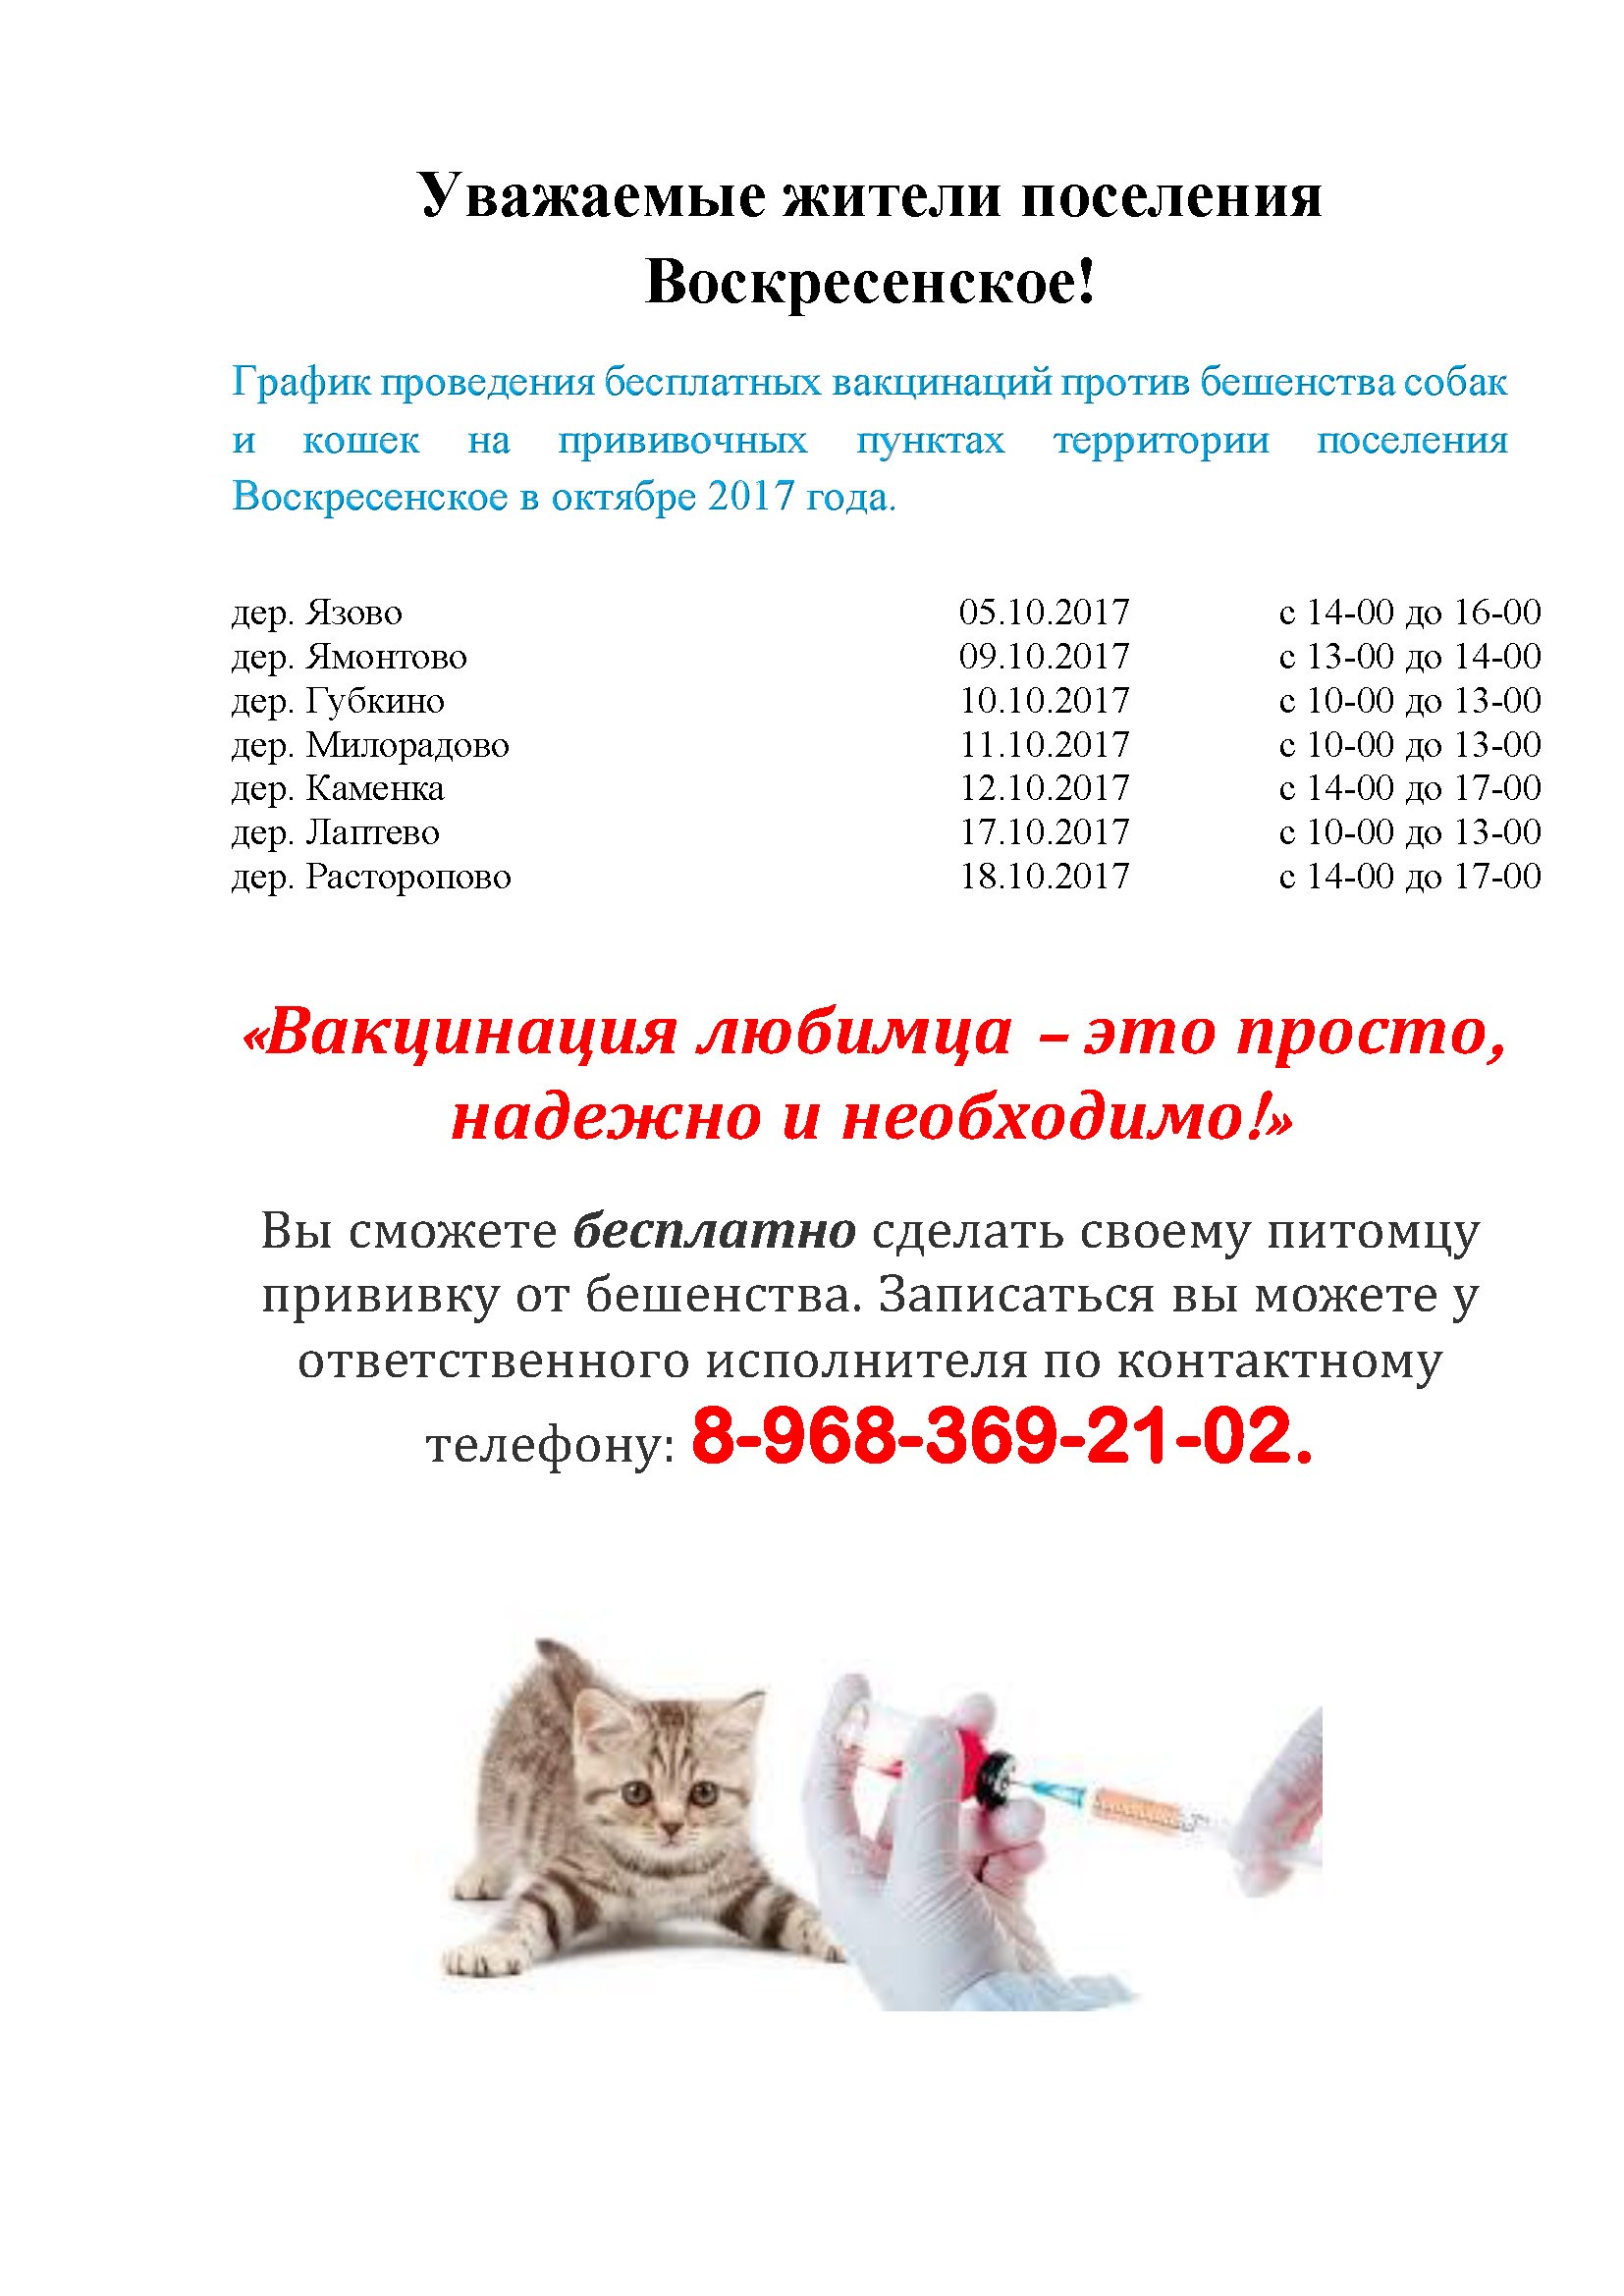 Бесплатные прививки для кошек в москве. Прививки коту график прививок. График прививок для котят. Вакцинация кошек от бешенства график. График вакцинации собак и кошек.